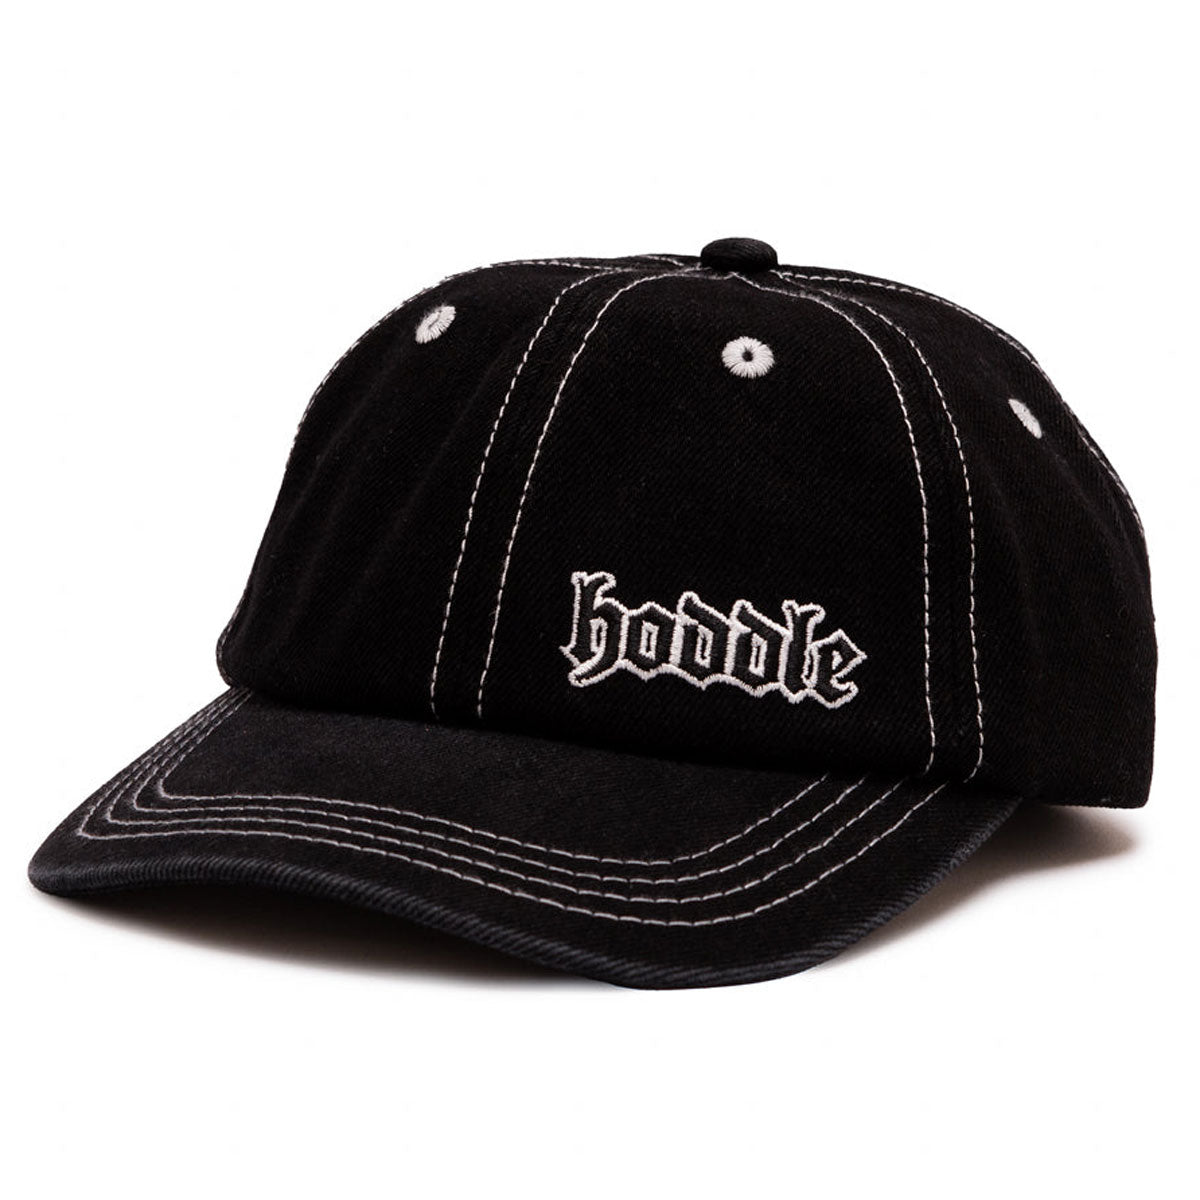 Hoddle Logo Denim Hat - Black Wash image 1